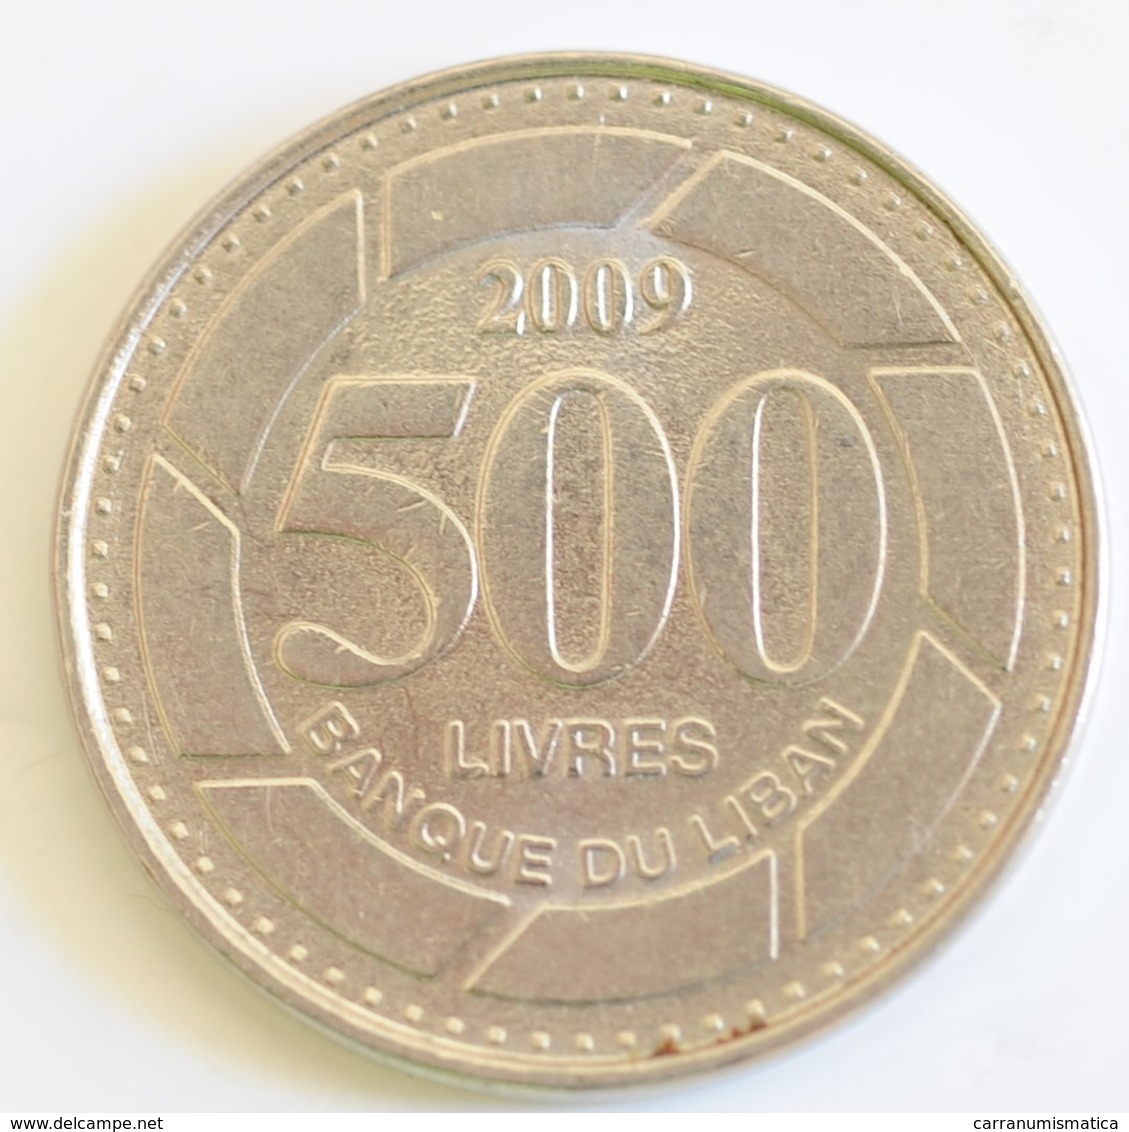 LIBANO 500 LIVRES 2009 - Lebanon